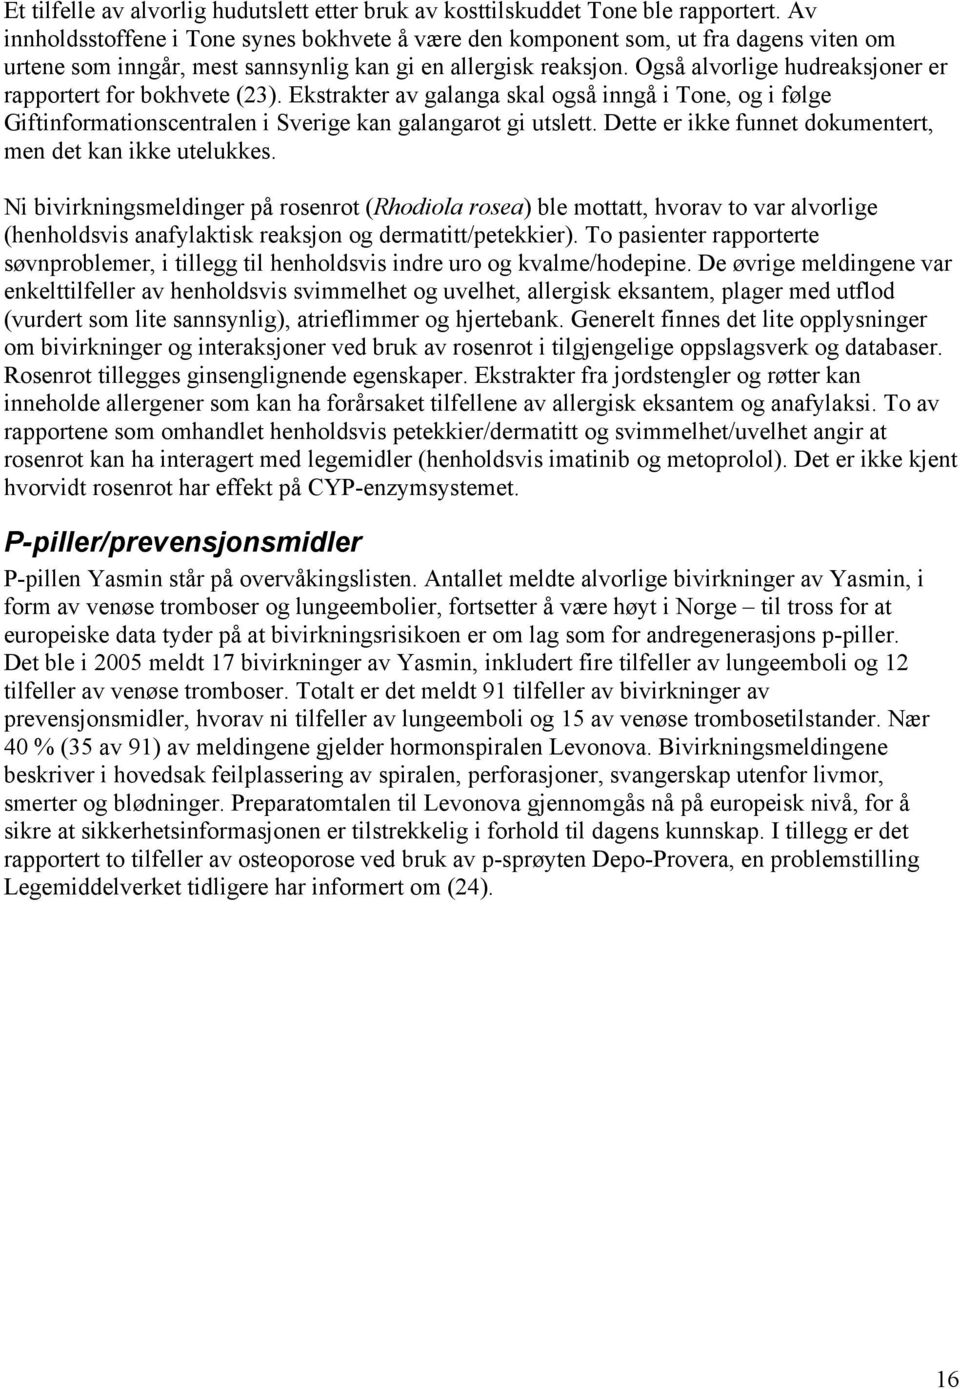 Også alvorlige hudreaksjoner er rapportert for bokhvete (23). Ekstrakter av galanga skal også inngå i Tone, og i følge Giftinformationscentralen i Sverige kan galangarot gi utslett.